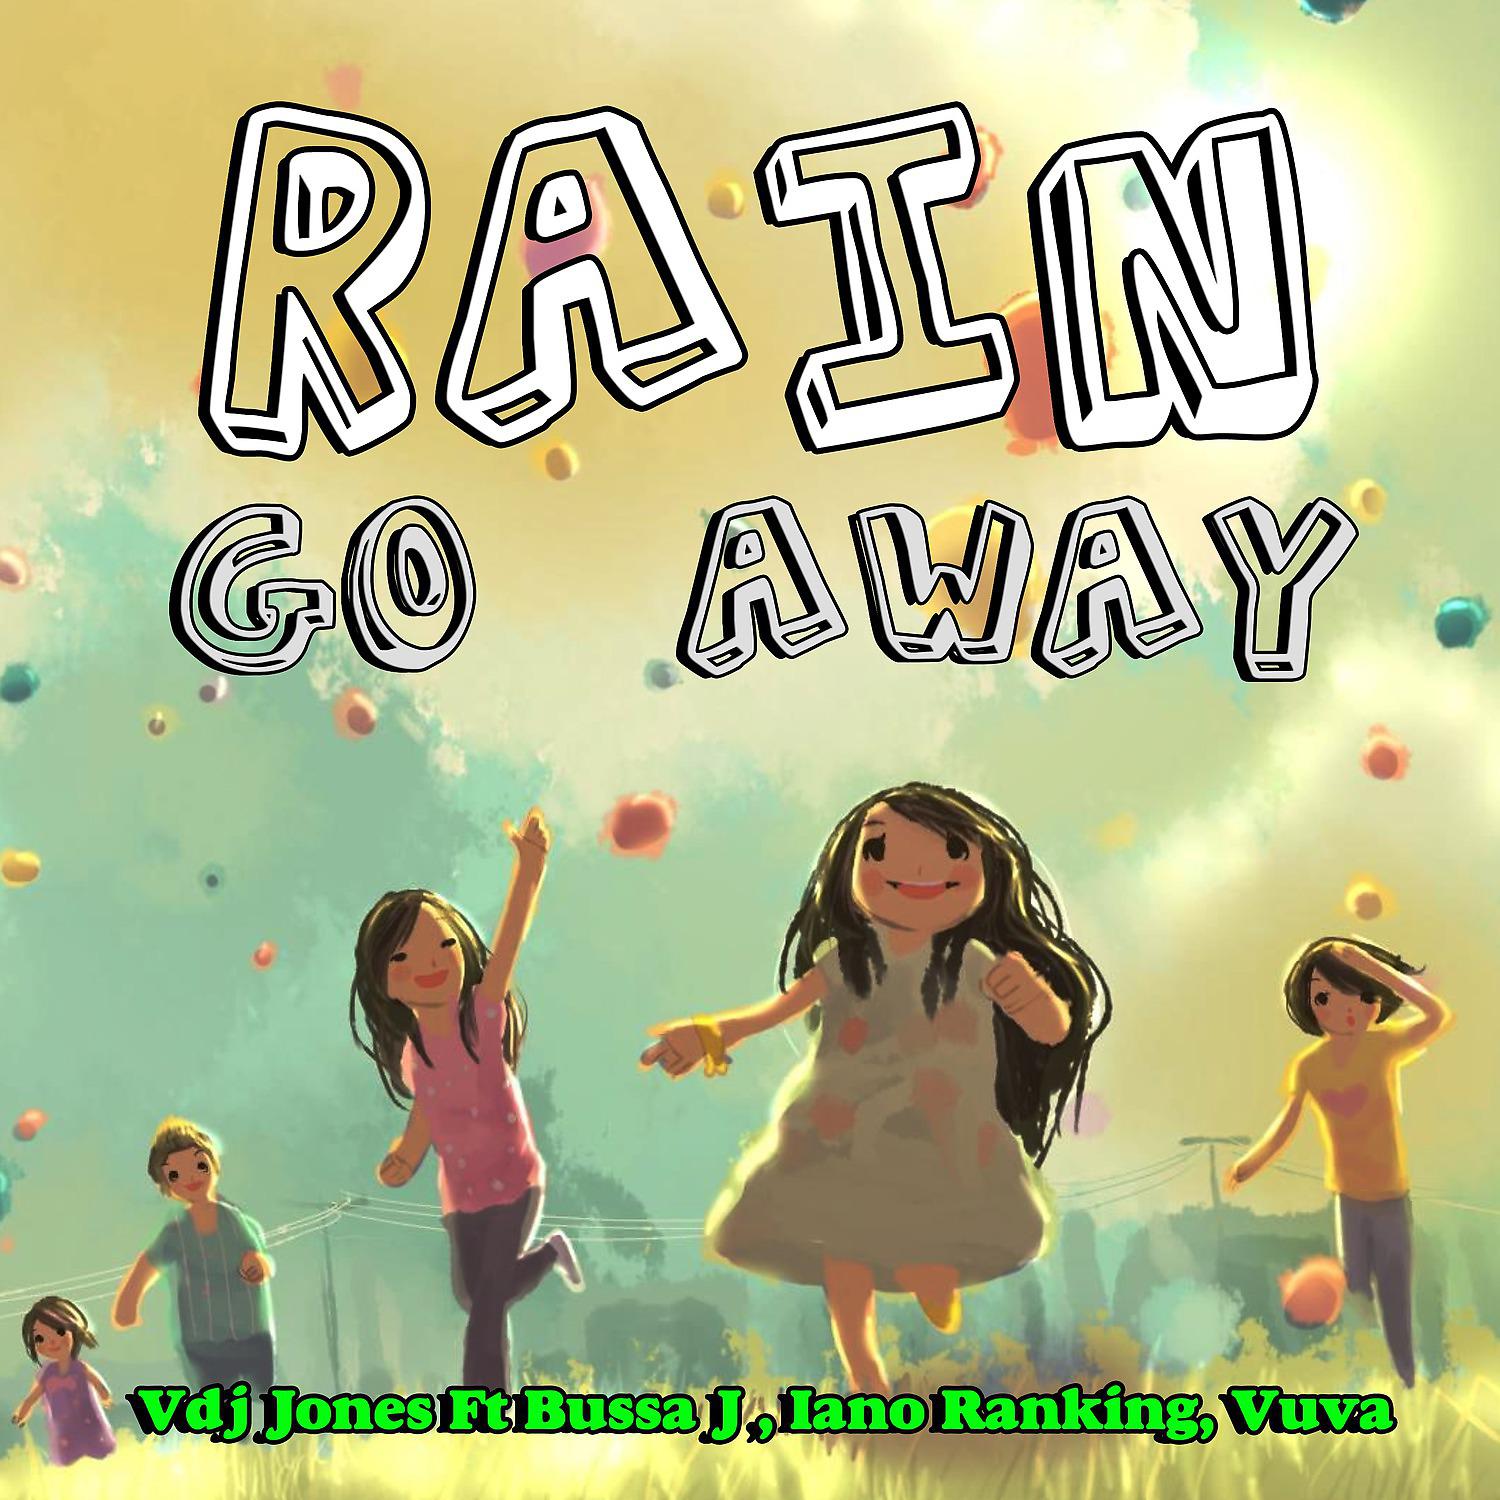 Постер альбома Rain Go Away